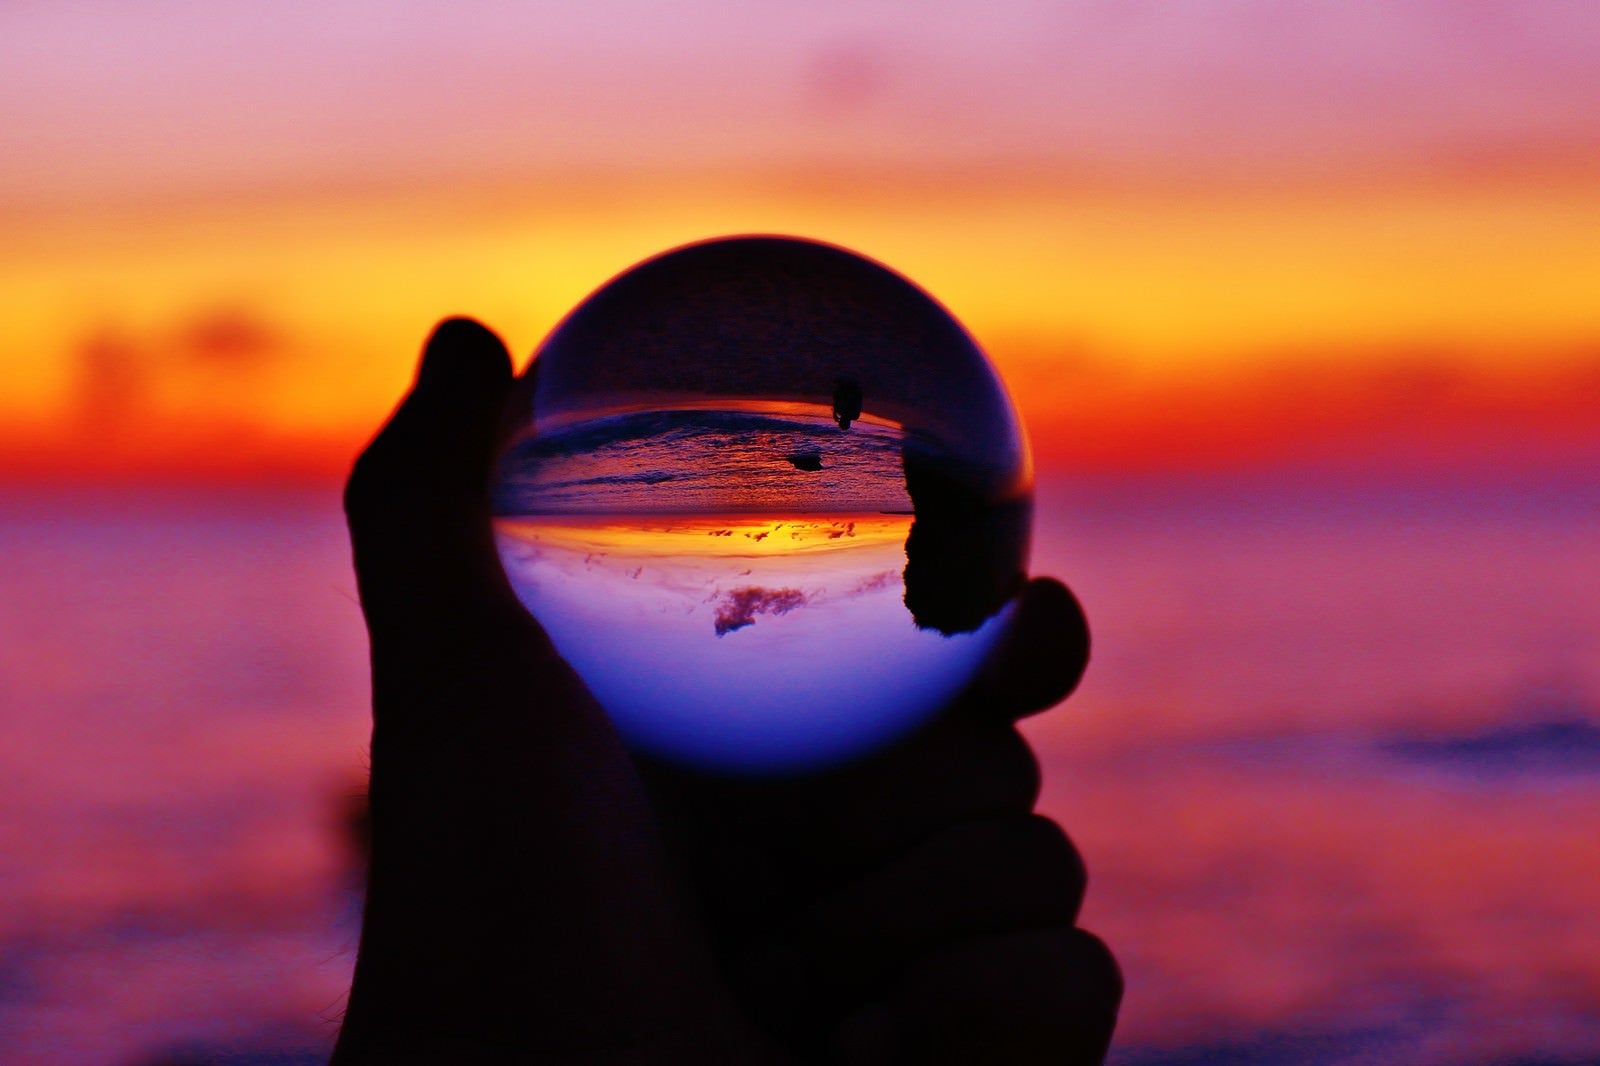 「オレンジ色の夕焼けを水晶球から眺める」の写真